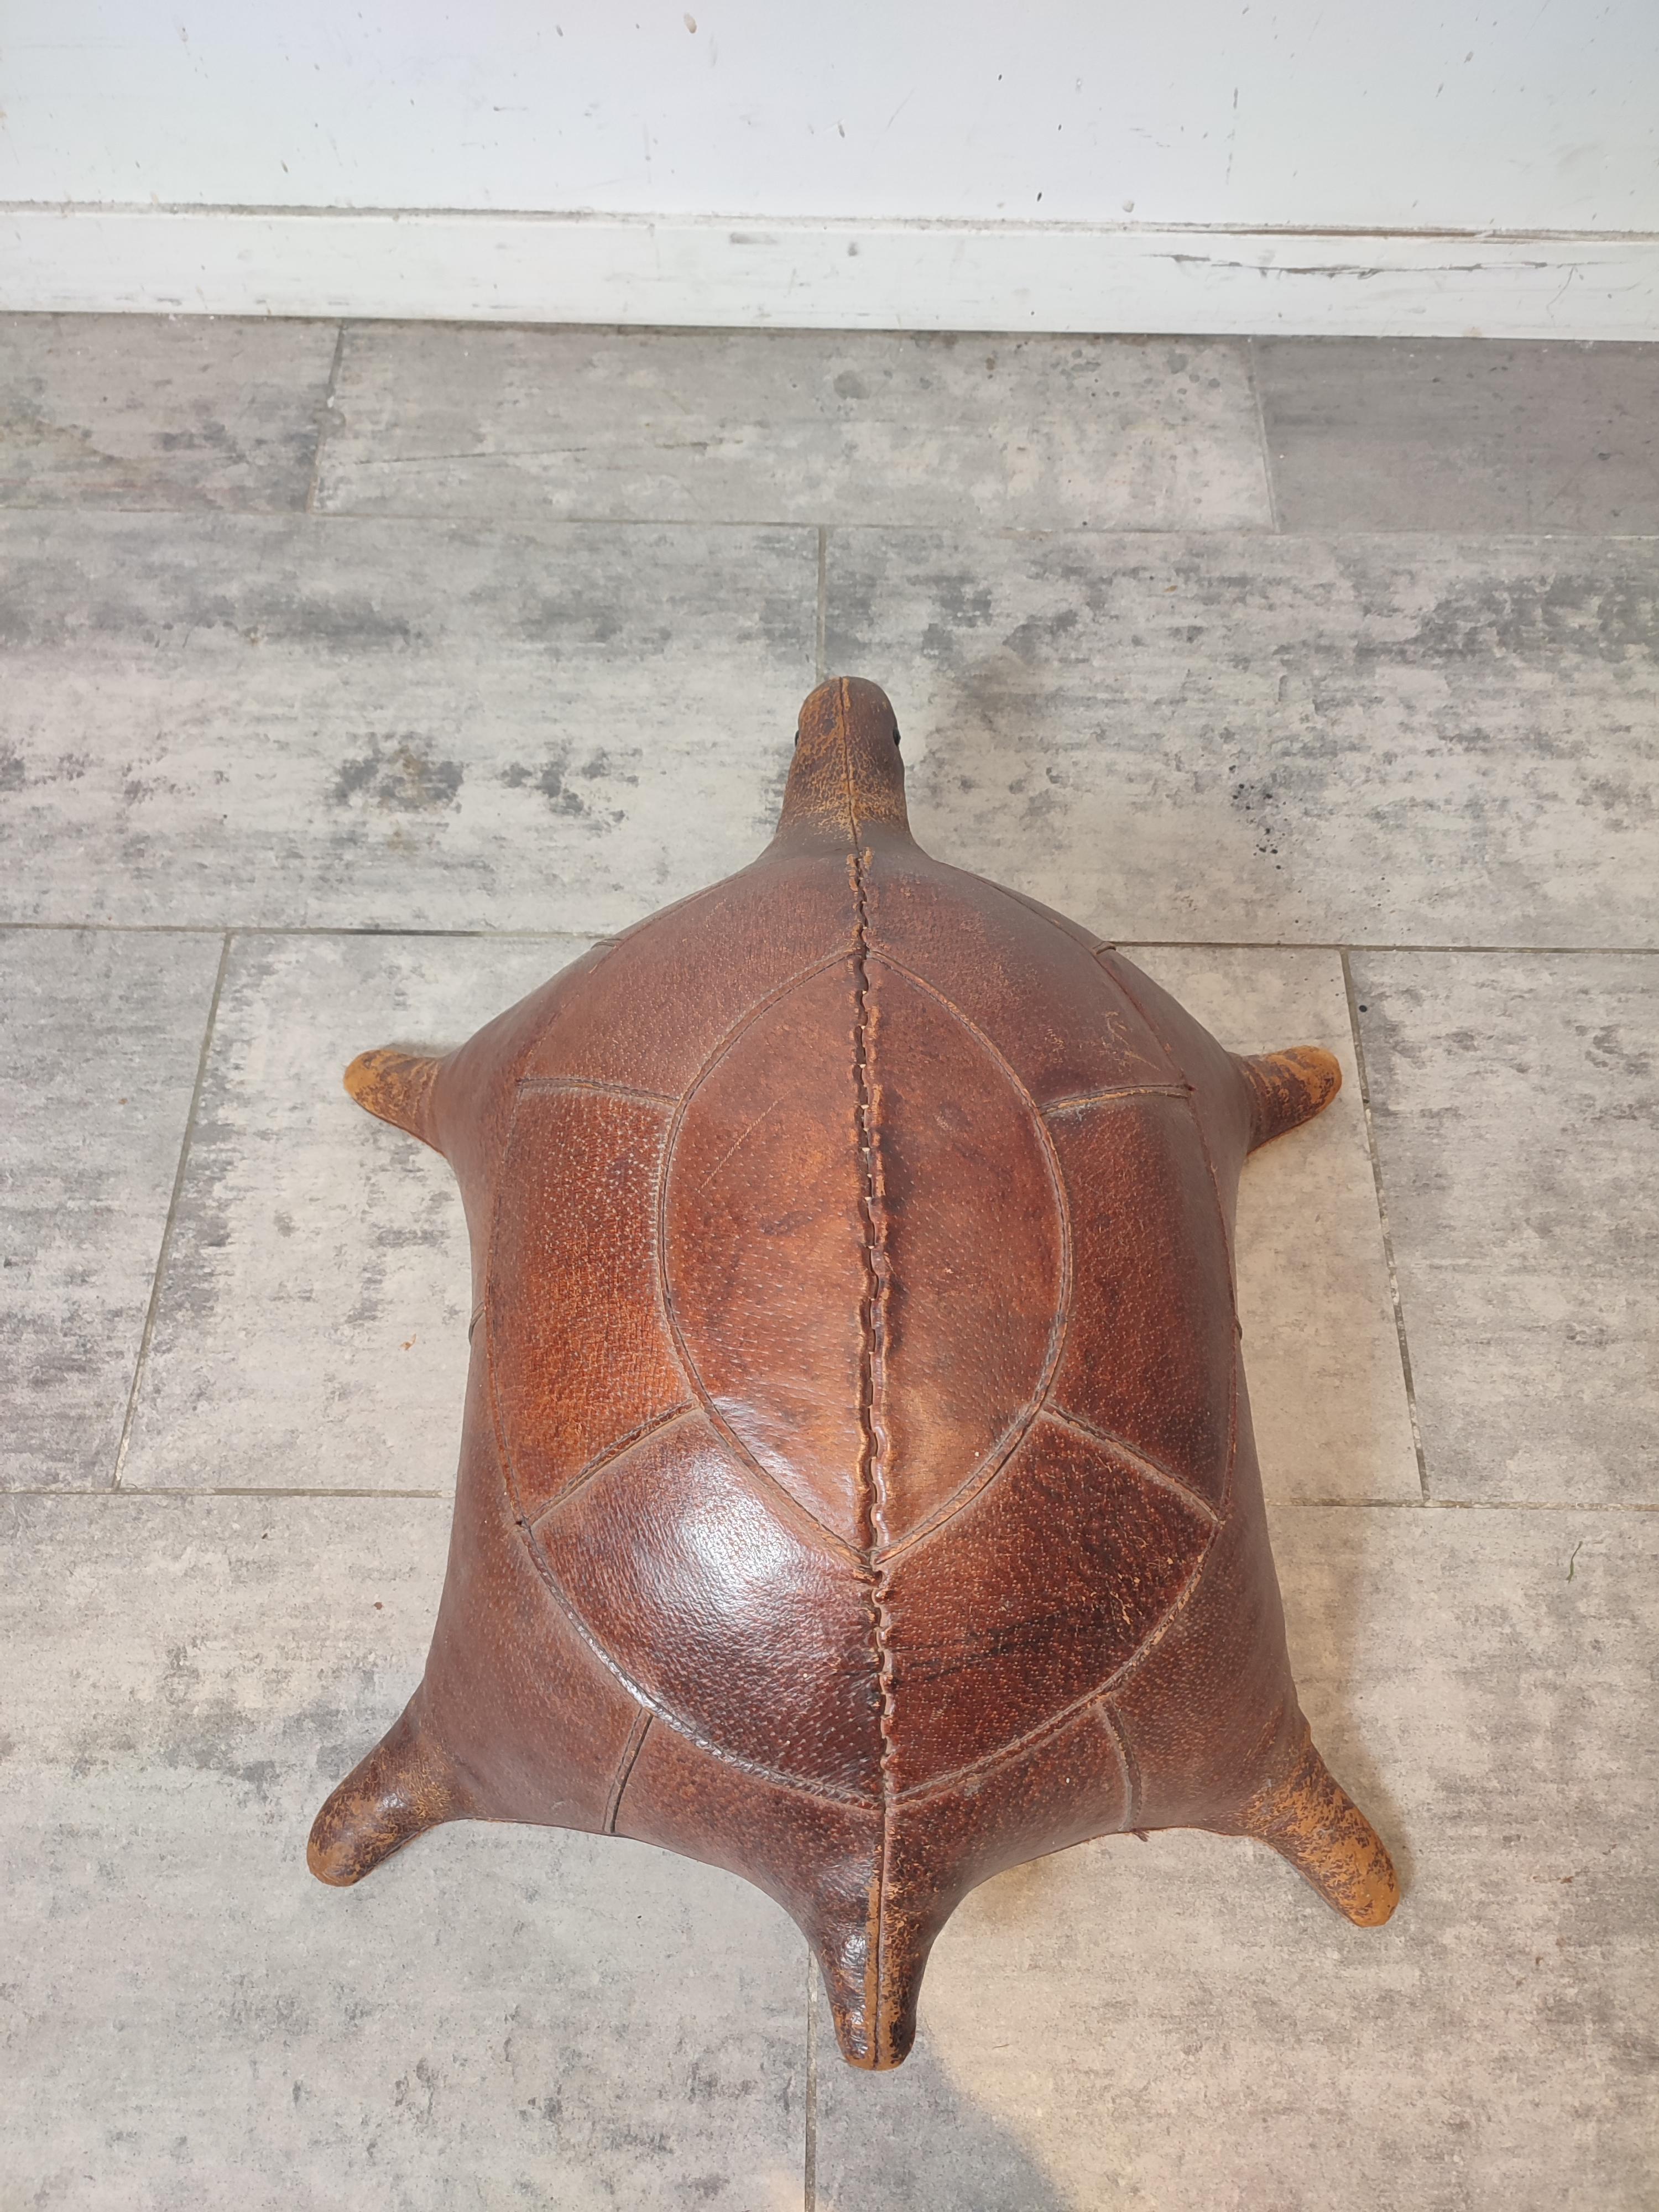 Très unique pouf tortue en cuir patiné, très bon état.
Livraison gratuite.